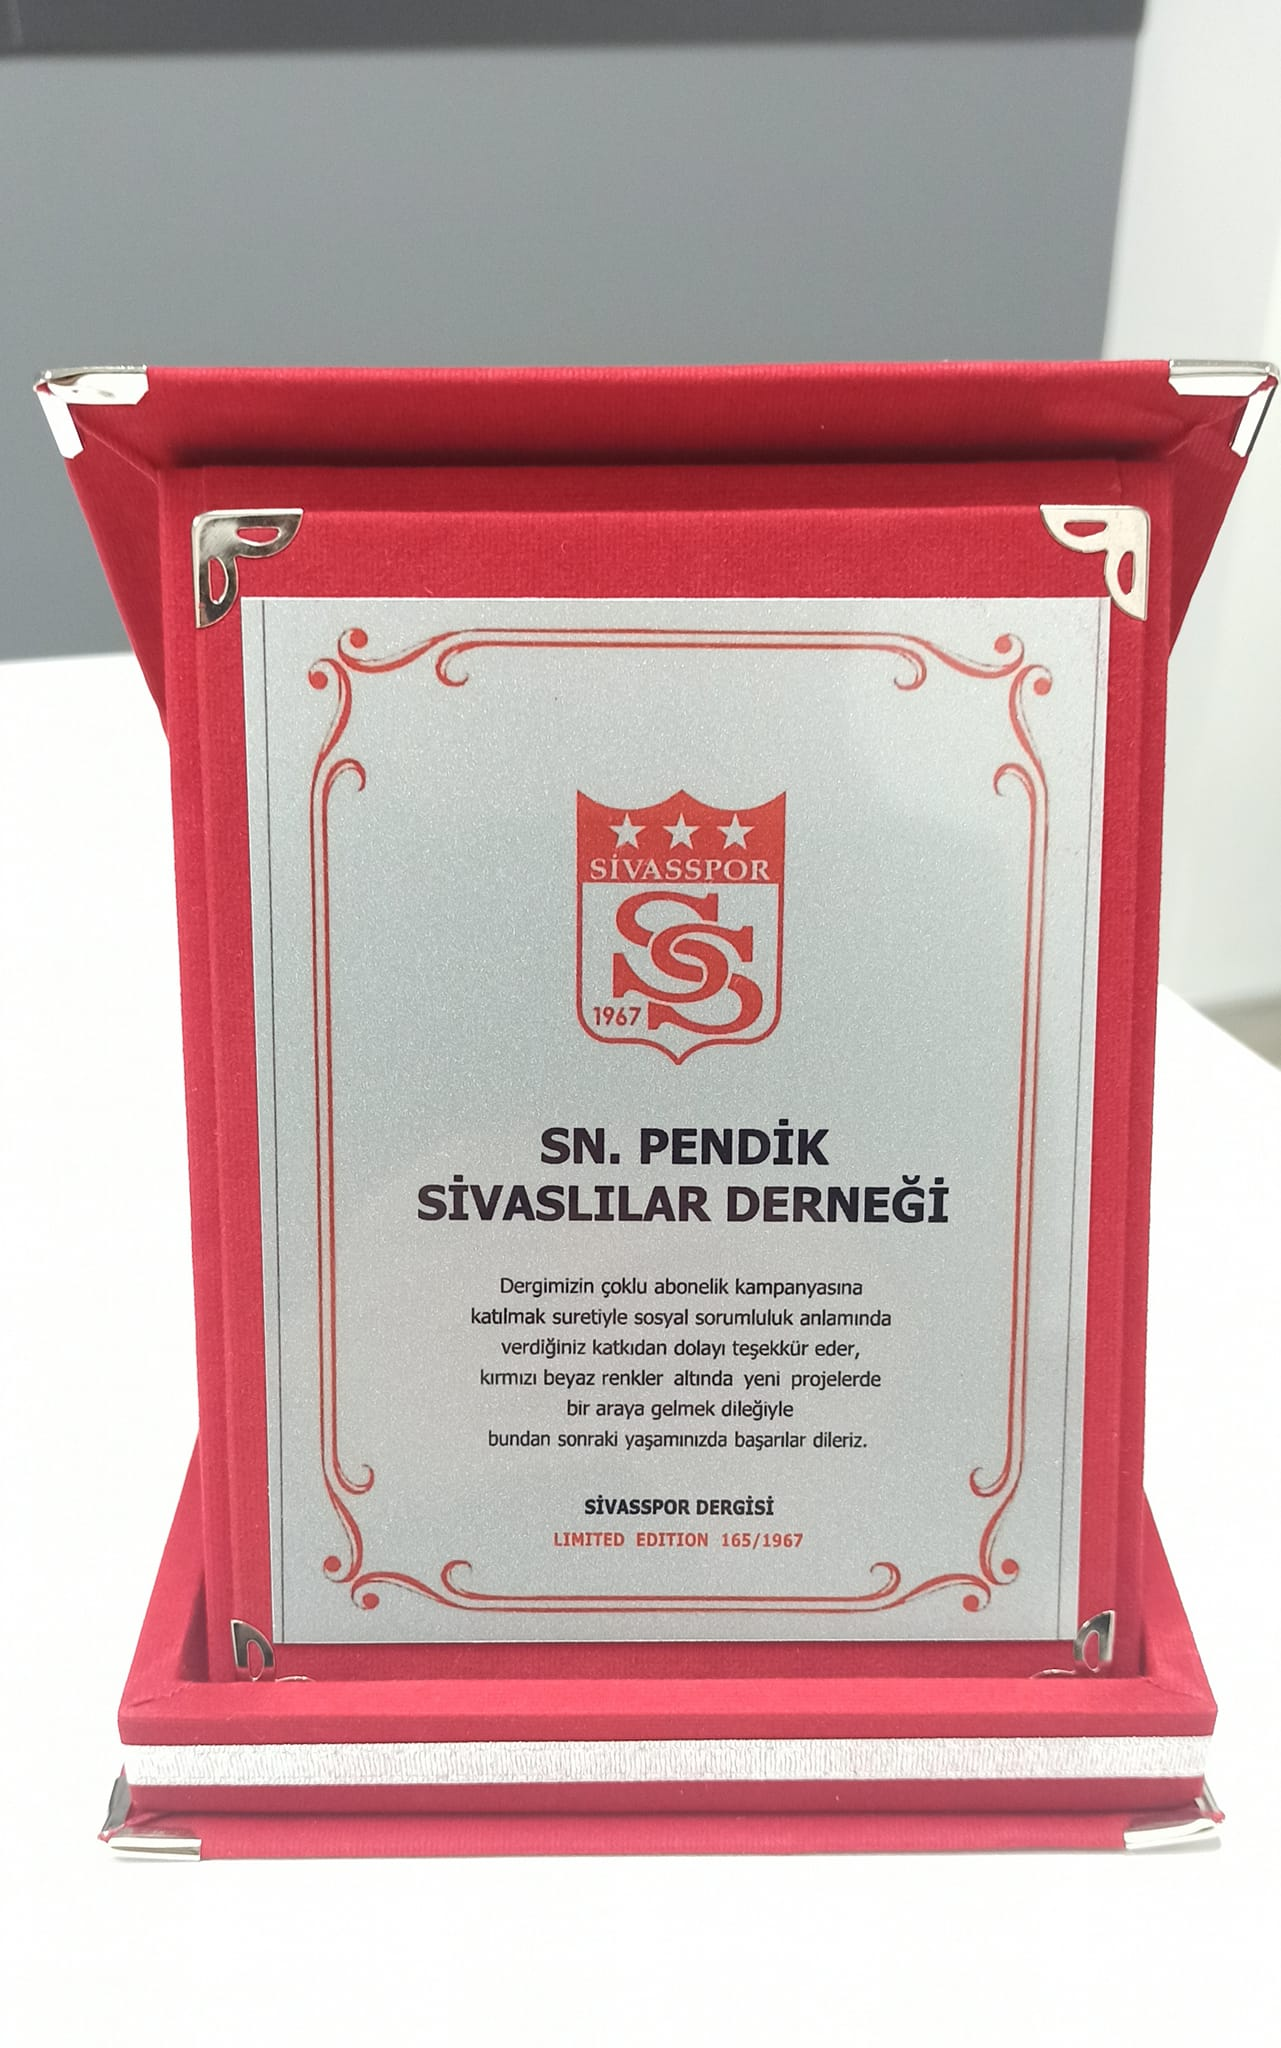 Sivasspor’a Gönderdikleri Hediyeleri İçin Teşekkür Ederiz.